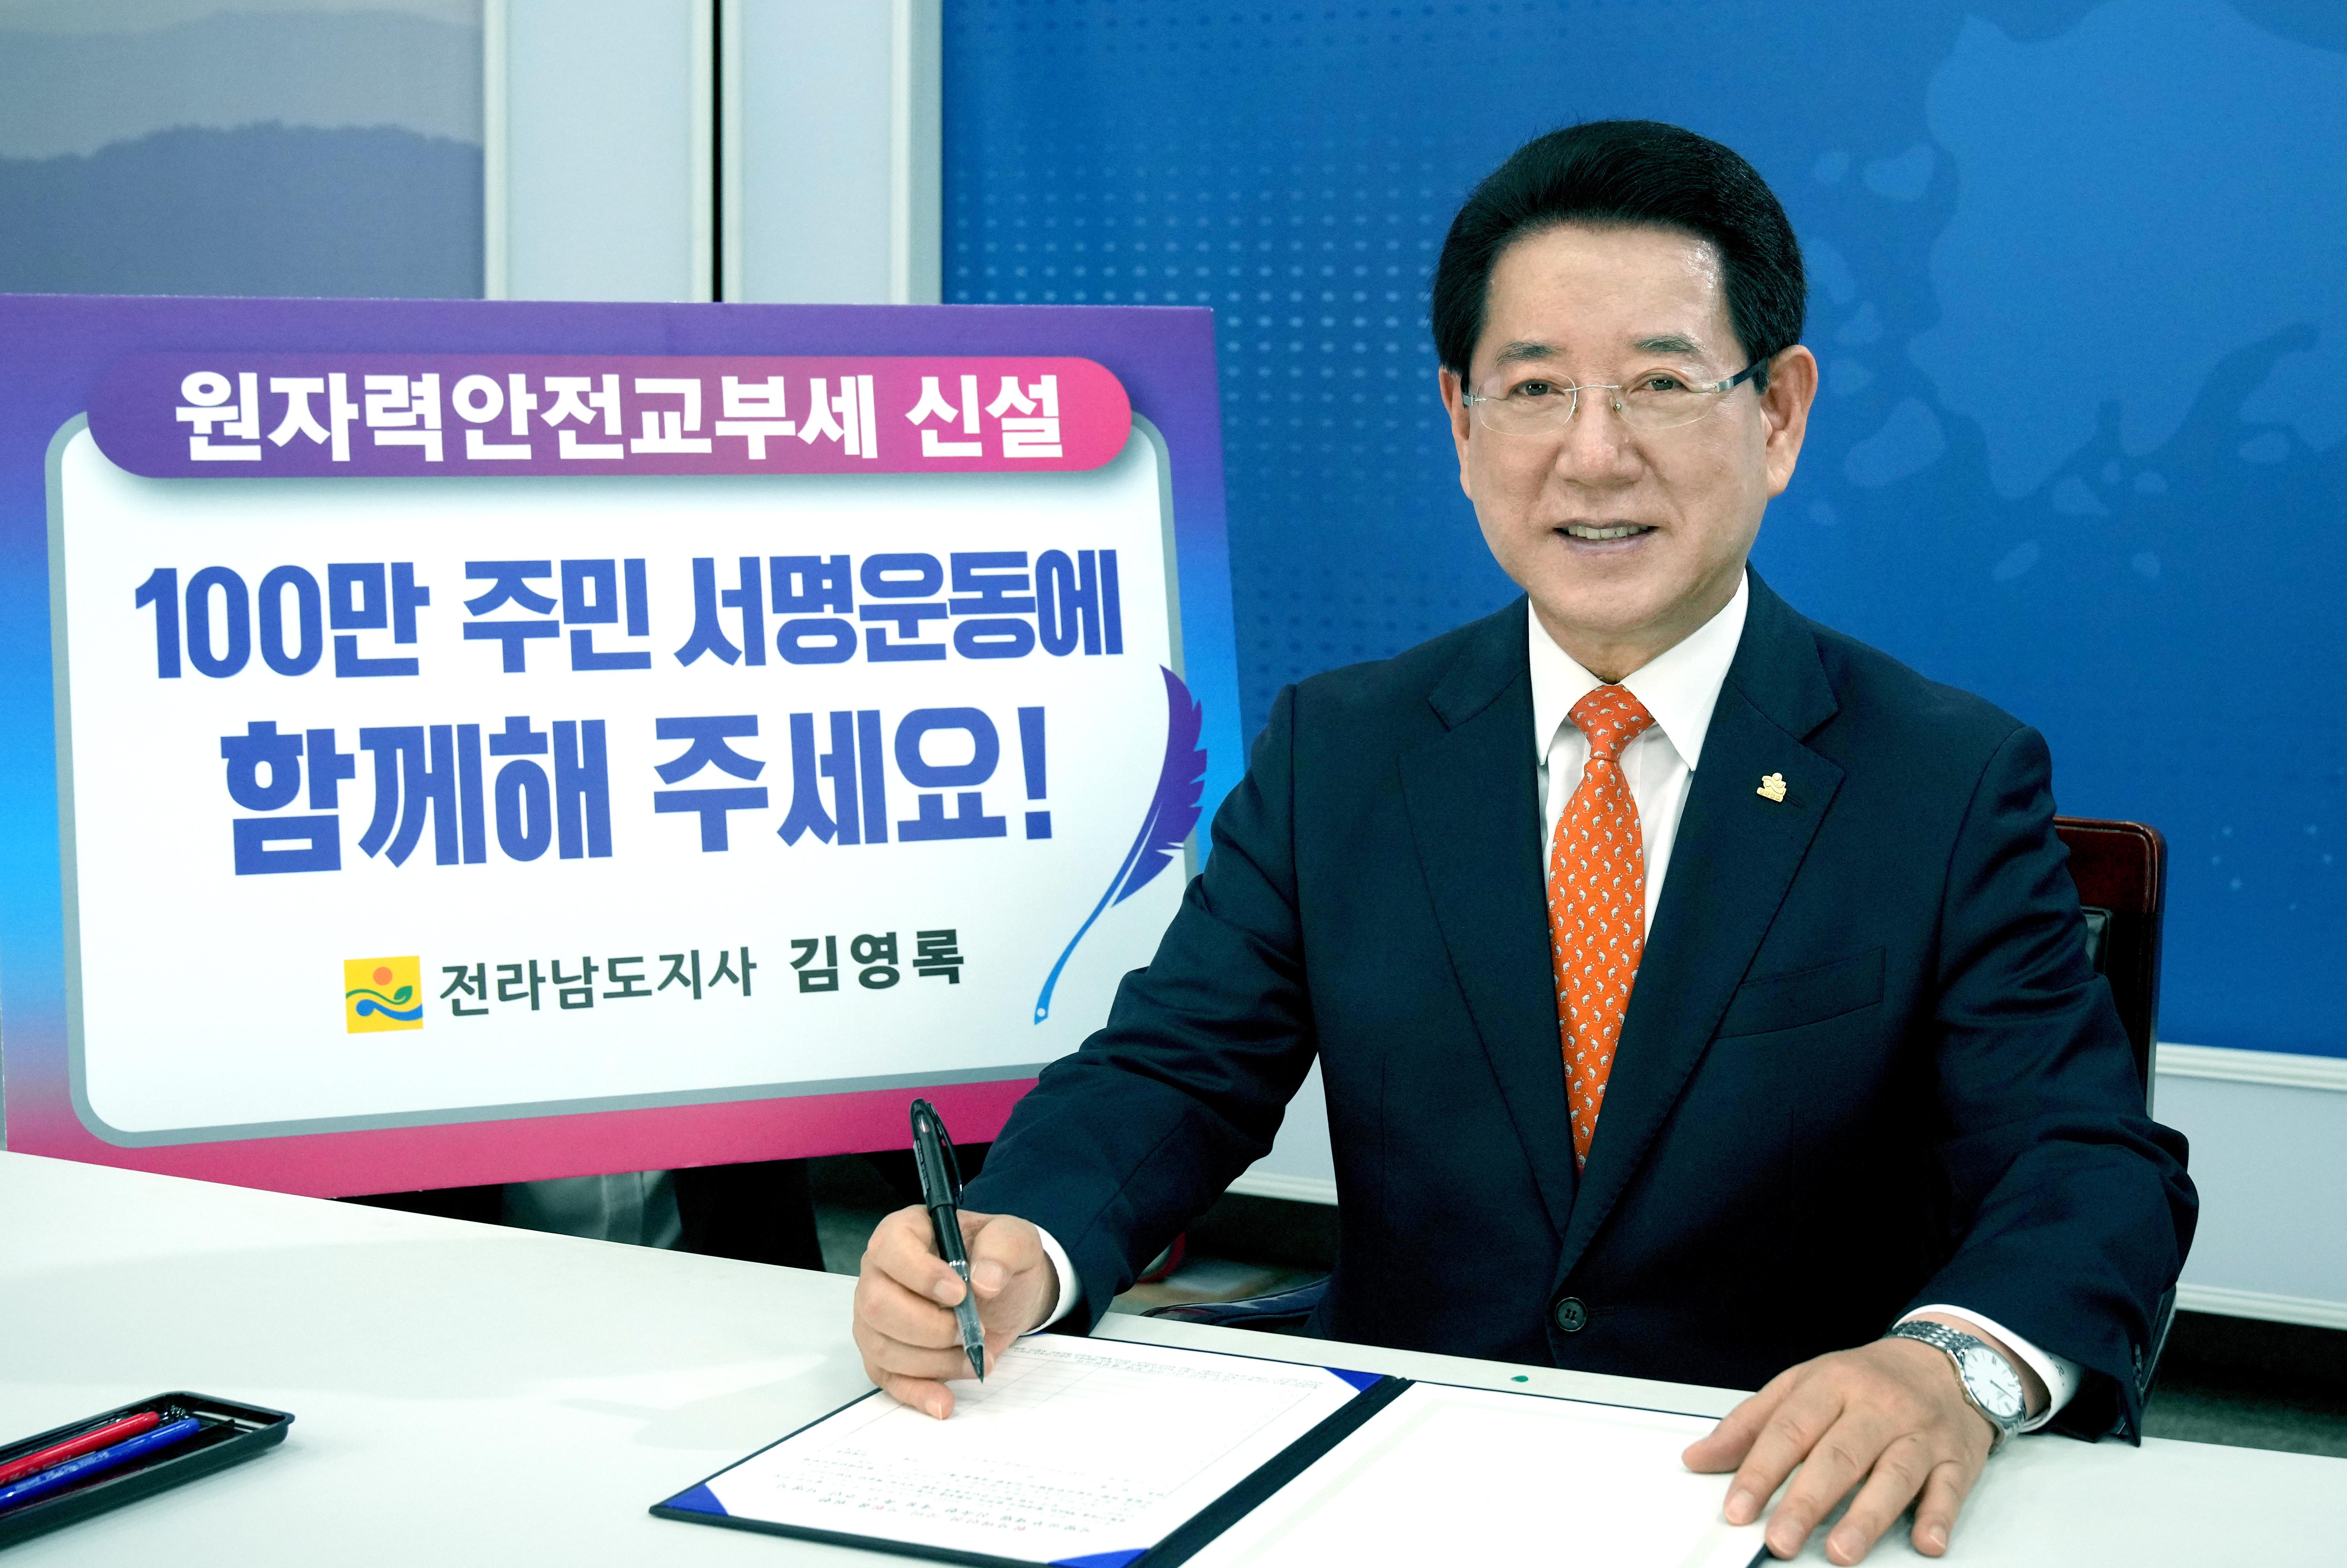 원자력안전교부세 신설 100만 주민 서명 운동 참여1